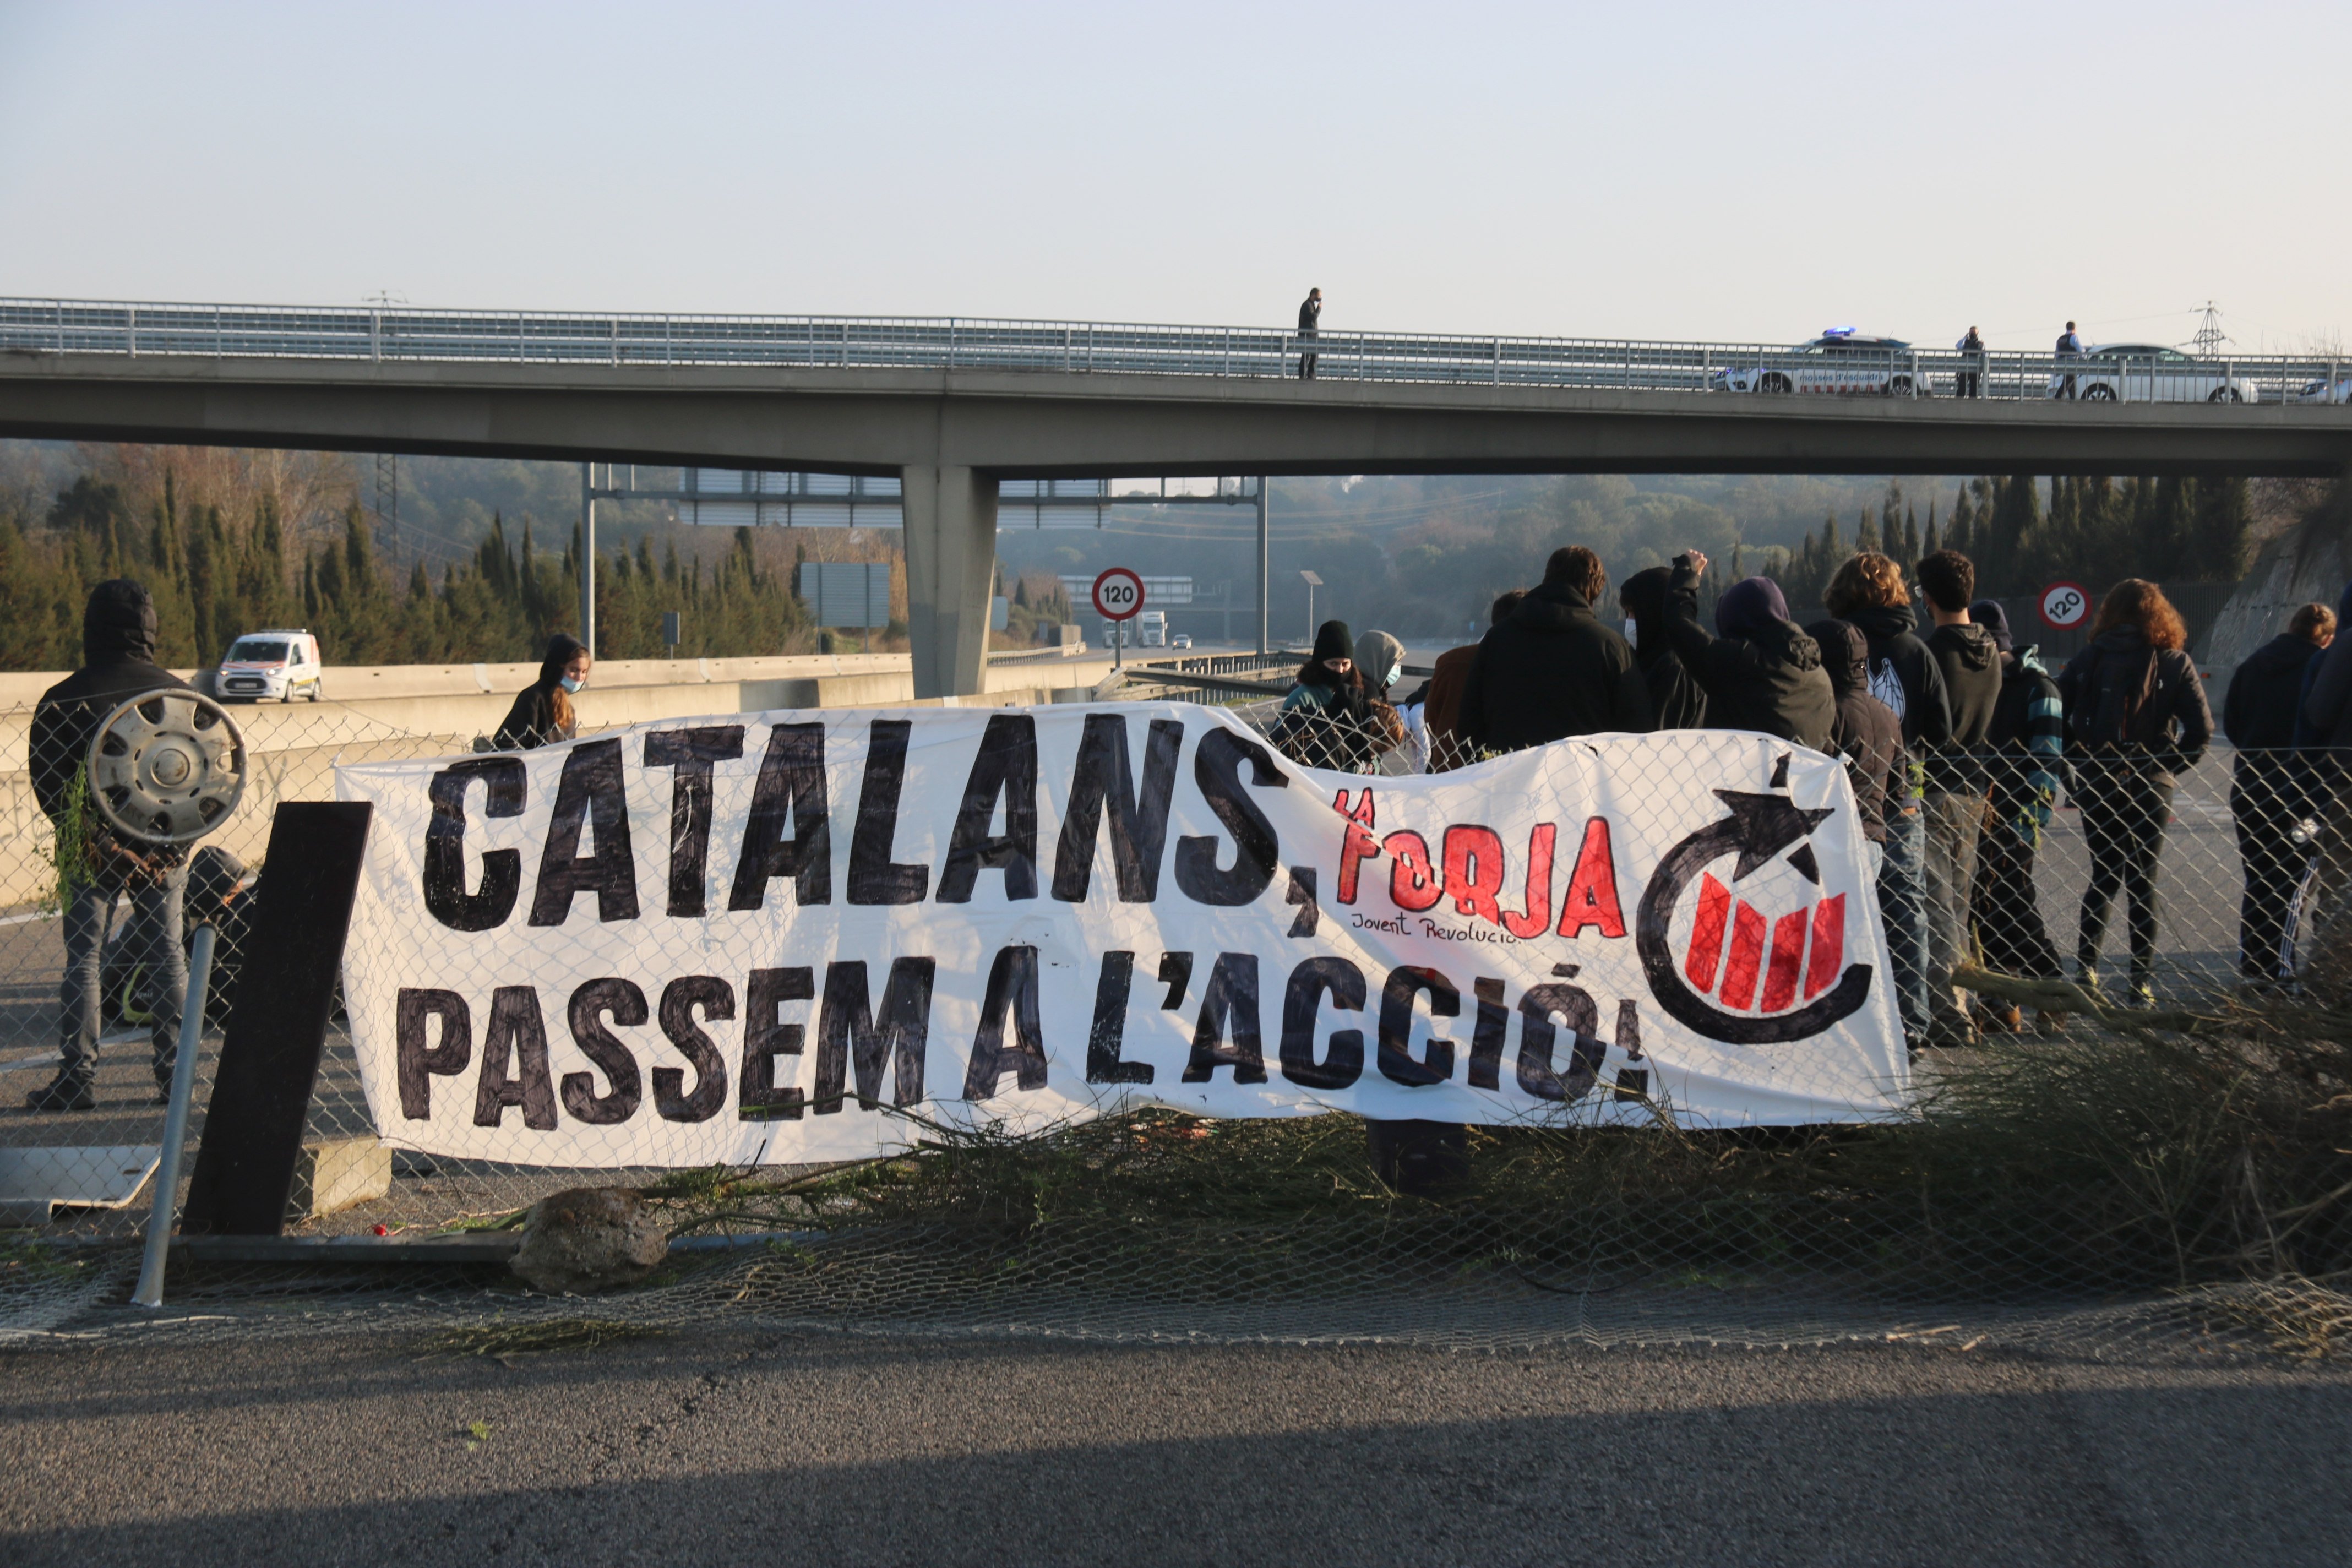 Cortan la AP-7 en Girona en protesta por el encarcelamiento de Pablo Hasél